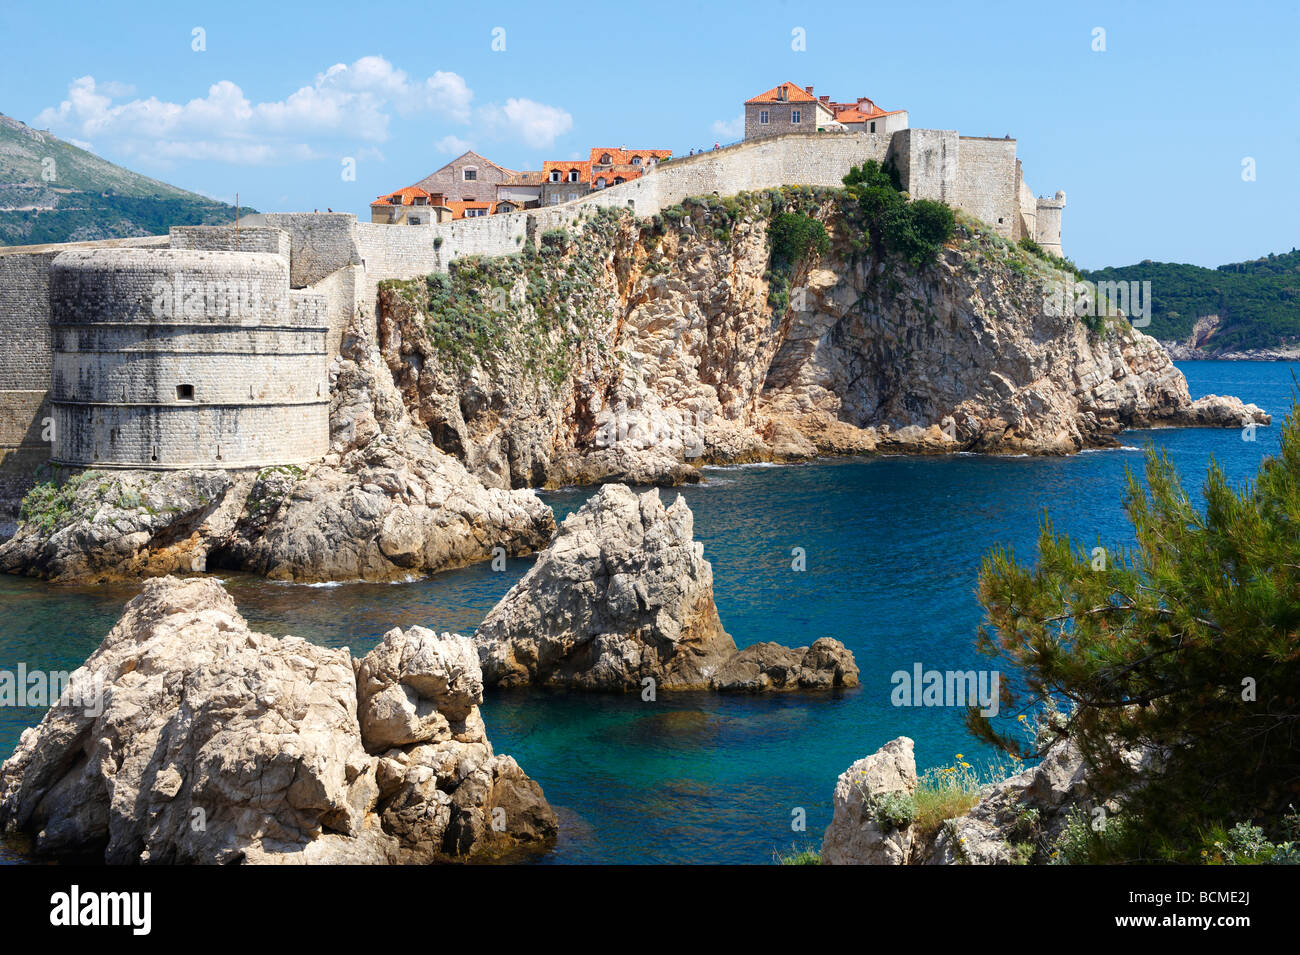 La ville médiévale de Dubrovnik - Croatie. Banque D'Images